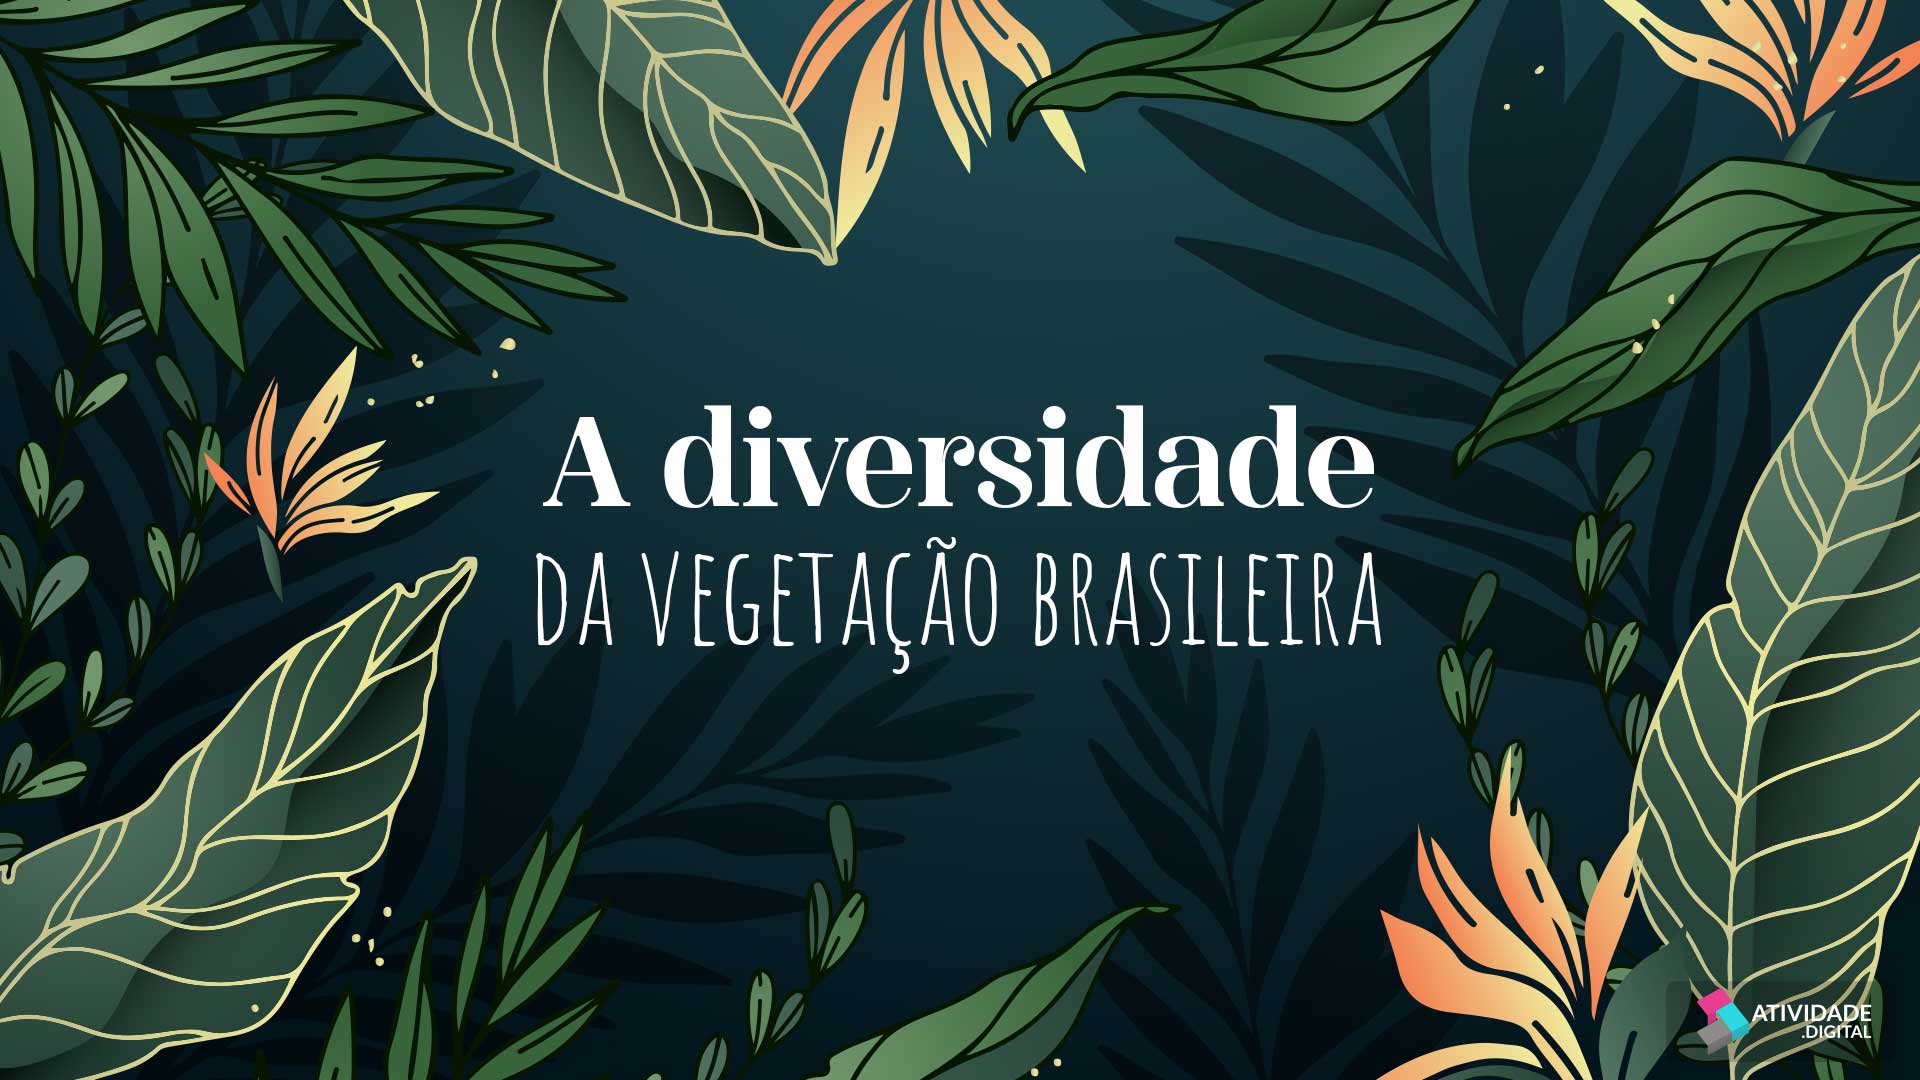 A diversidade da vegetação brasileira